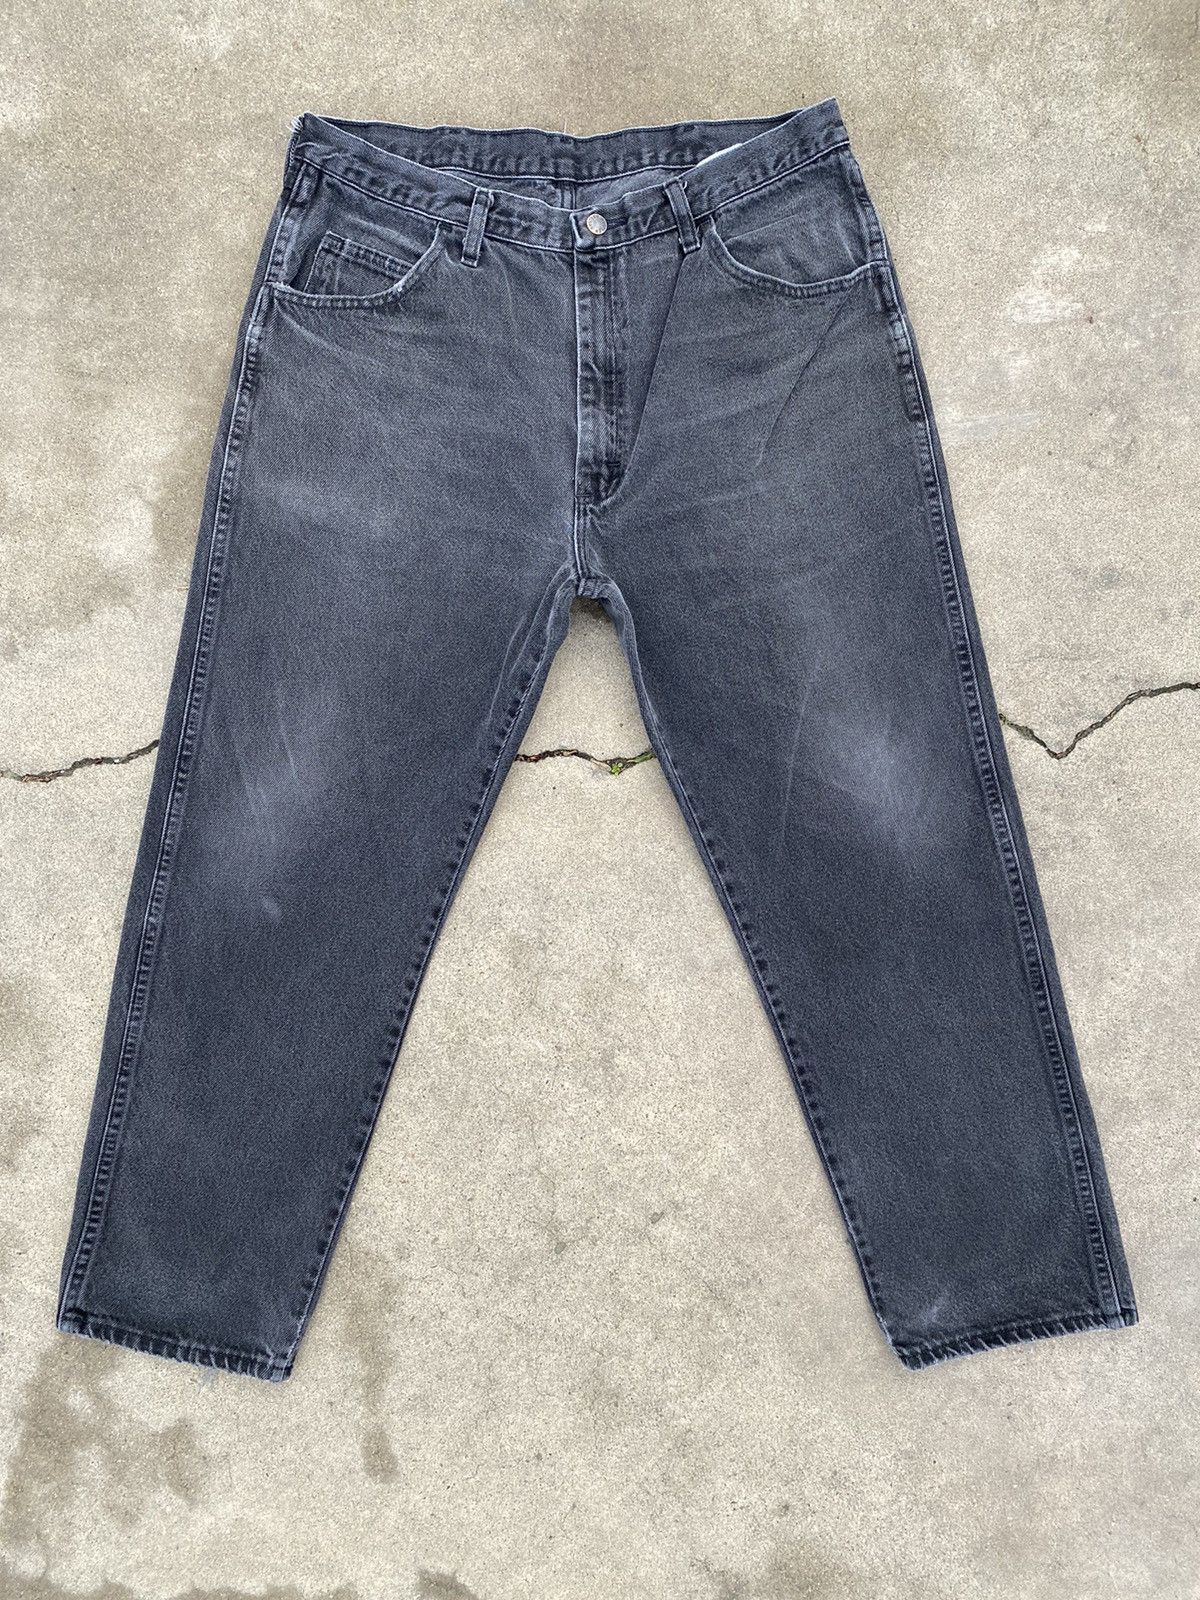 Vintage Vintage faded rustler jeans | Grailed